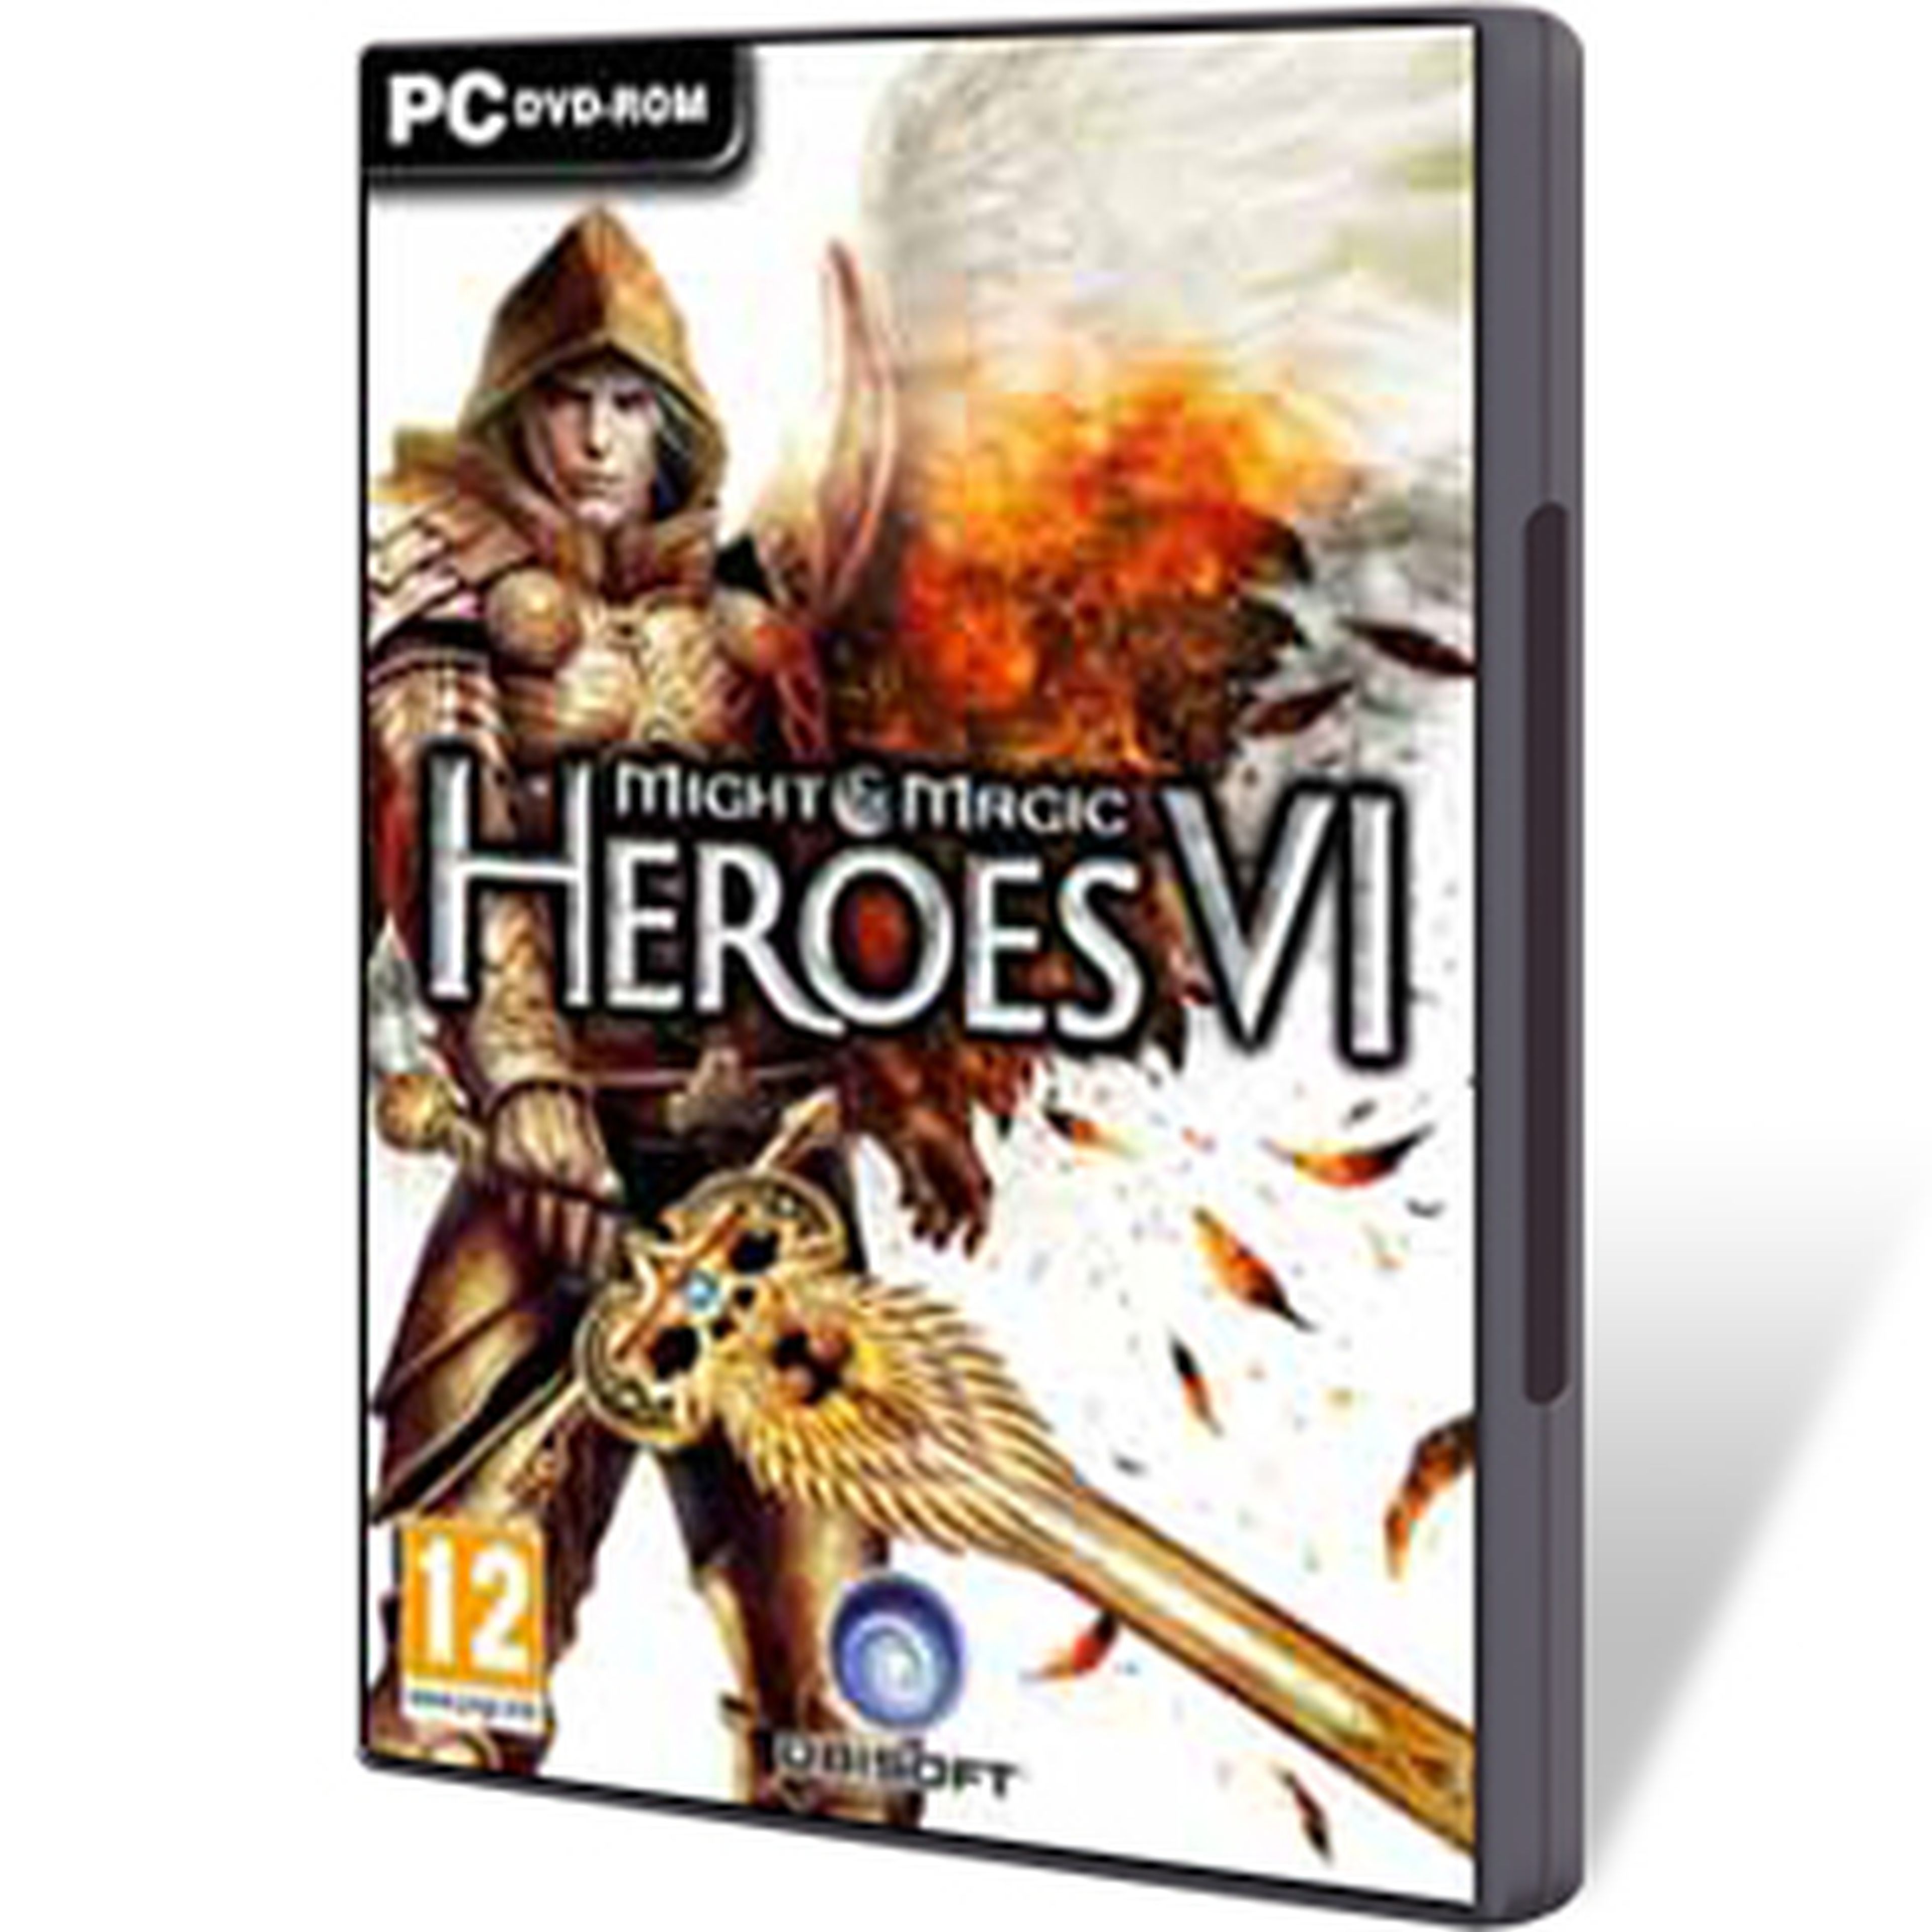 Might & Magic Heroes VI para PC